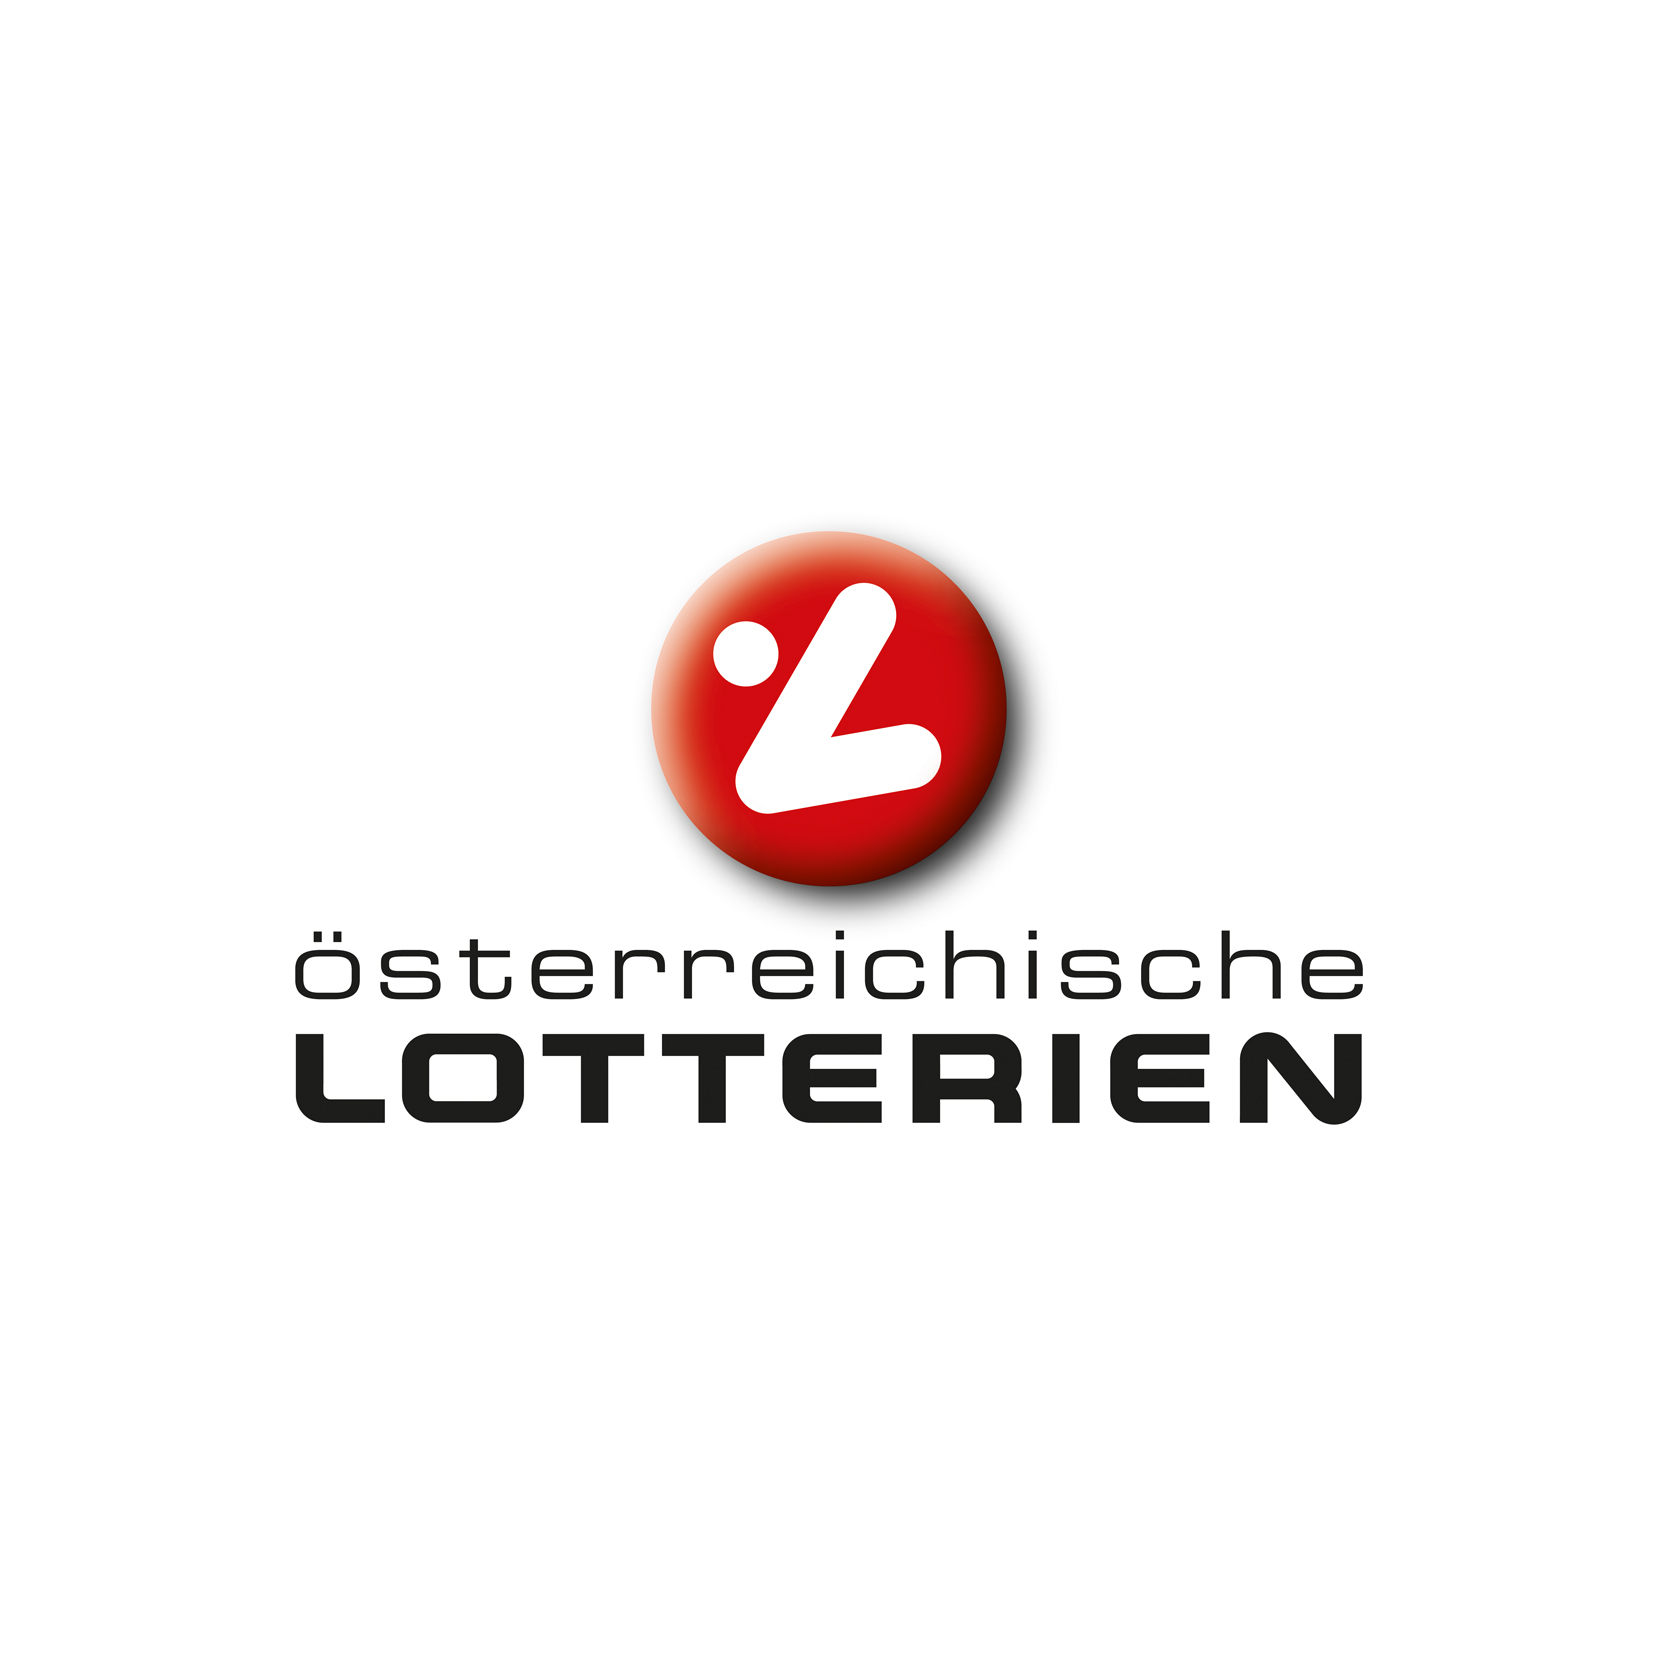 Österreichische Lotterien logo